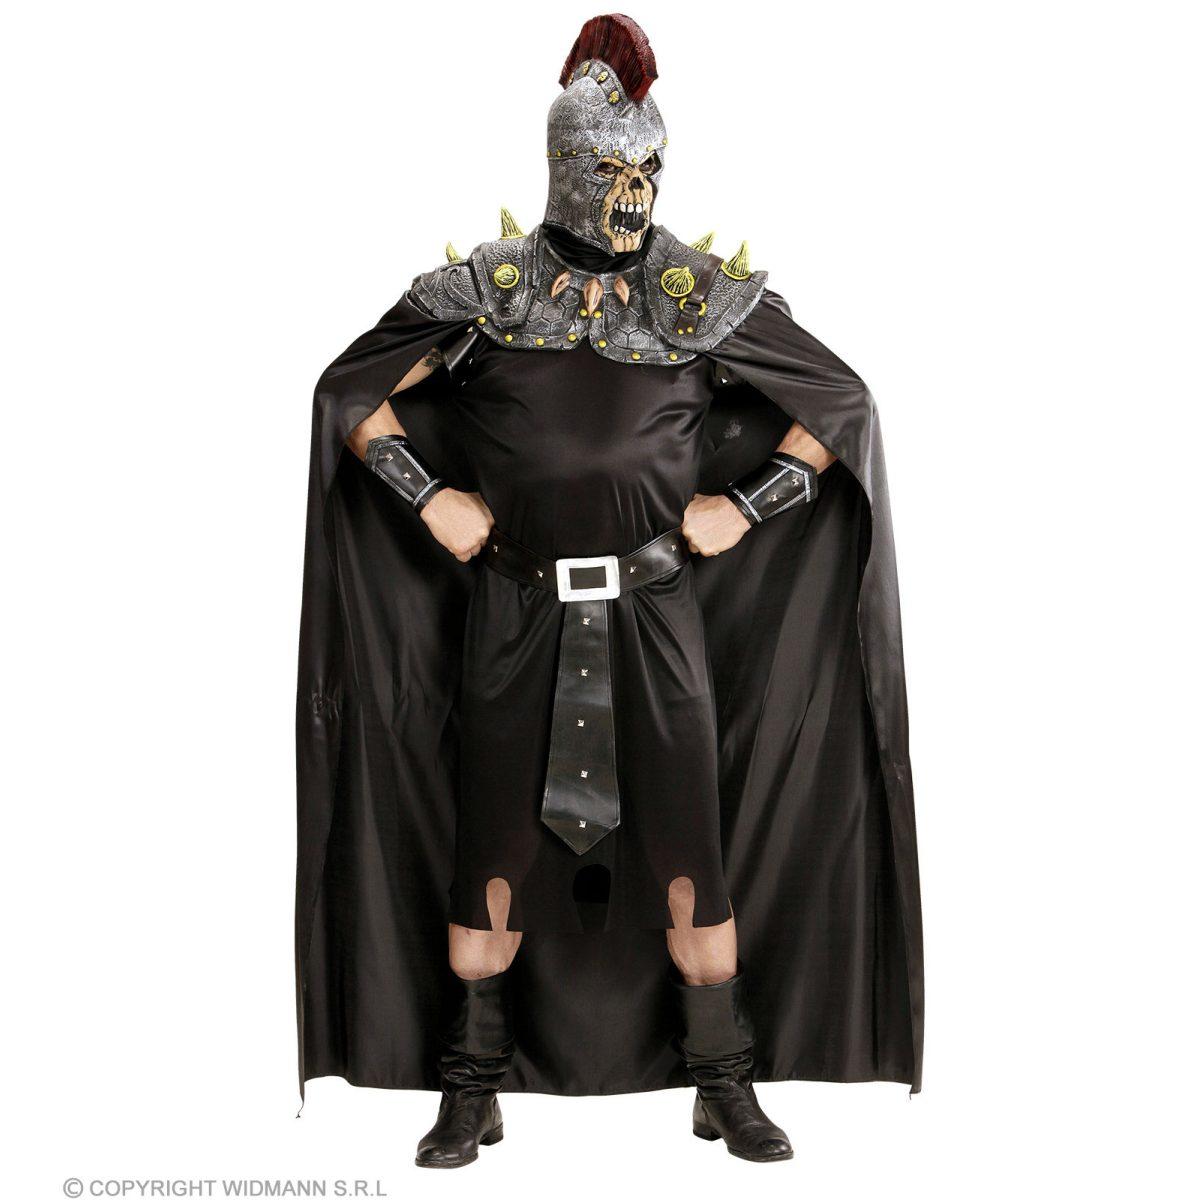 Costume Mantello Nero con Maschera Teschio e Centurione Romano